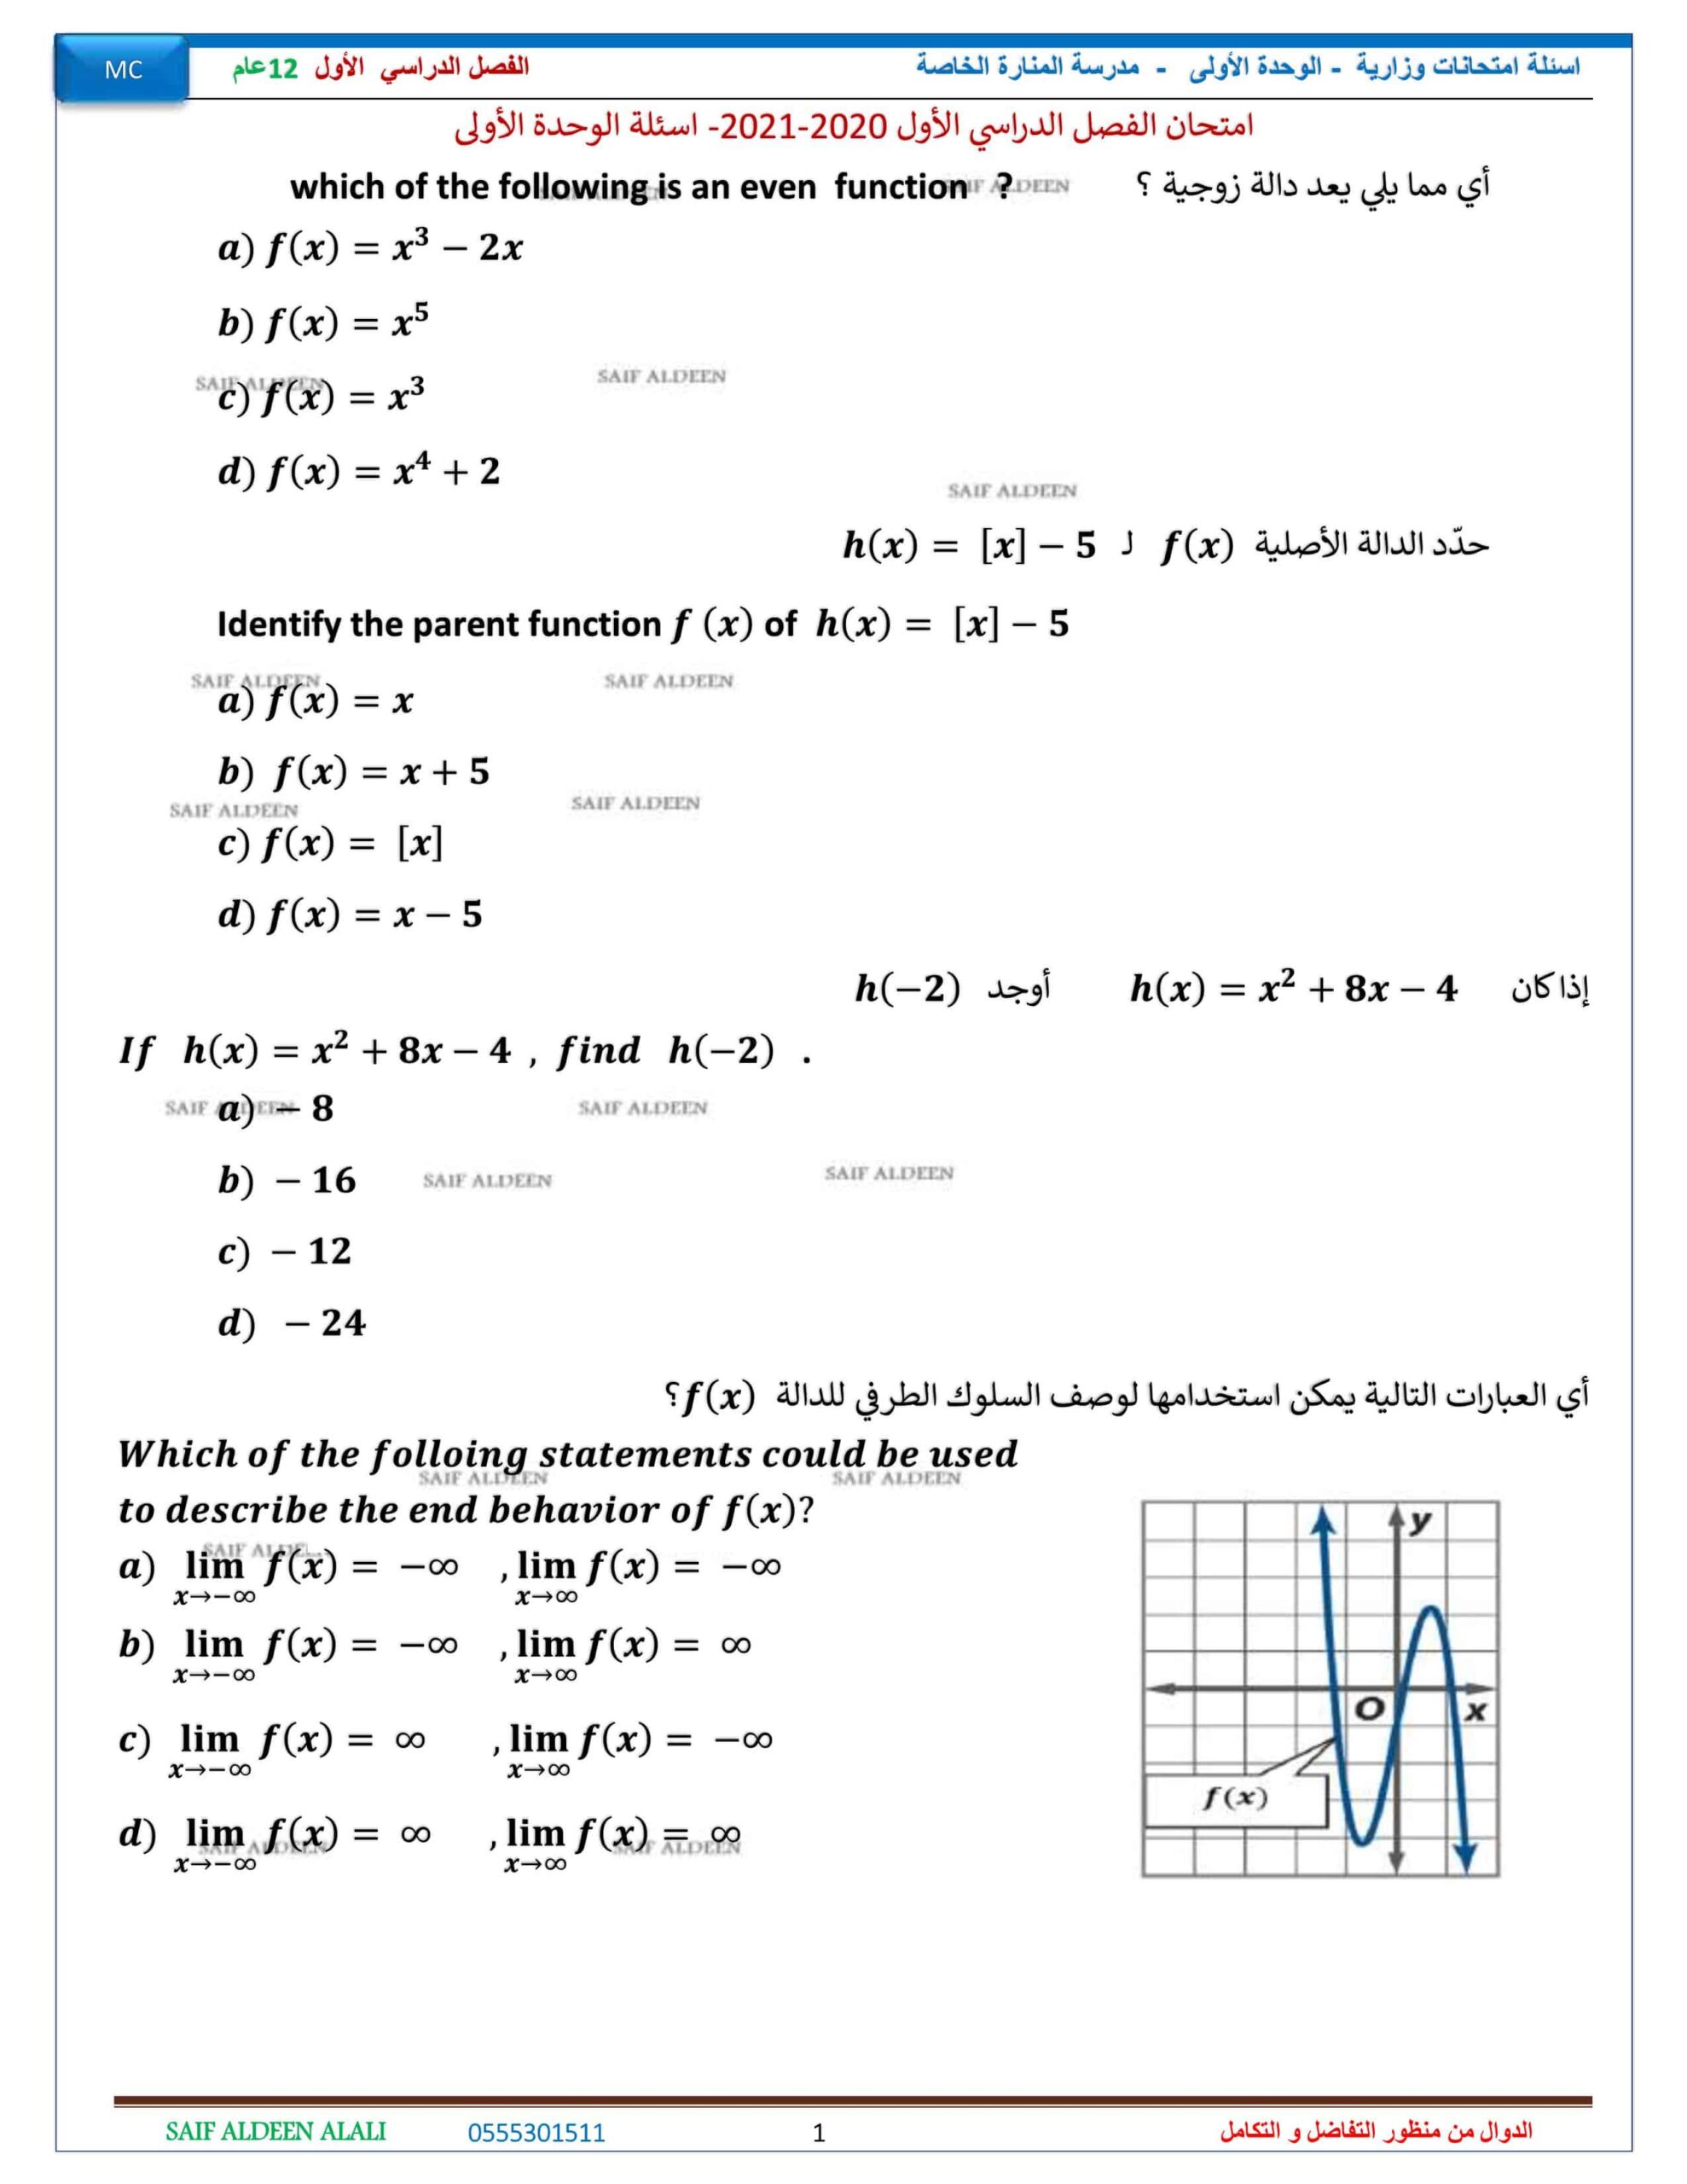 أسئلة امتحانات وزارية الوحدة الأولى الرياضيات المتكاملة الصف الثاني عشر عام 